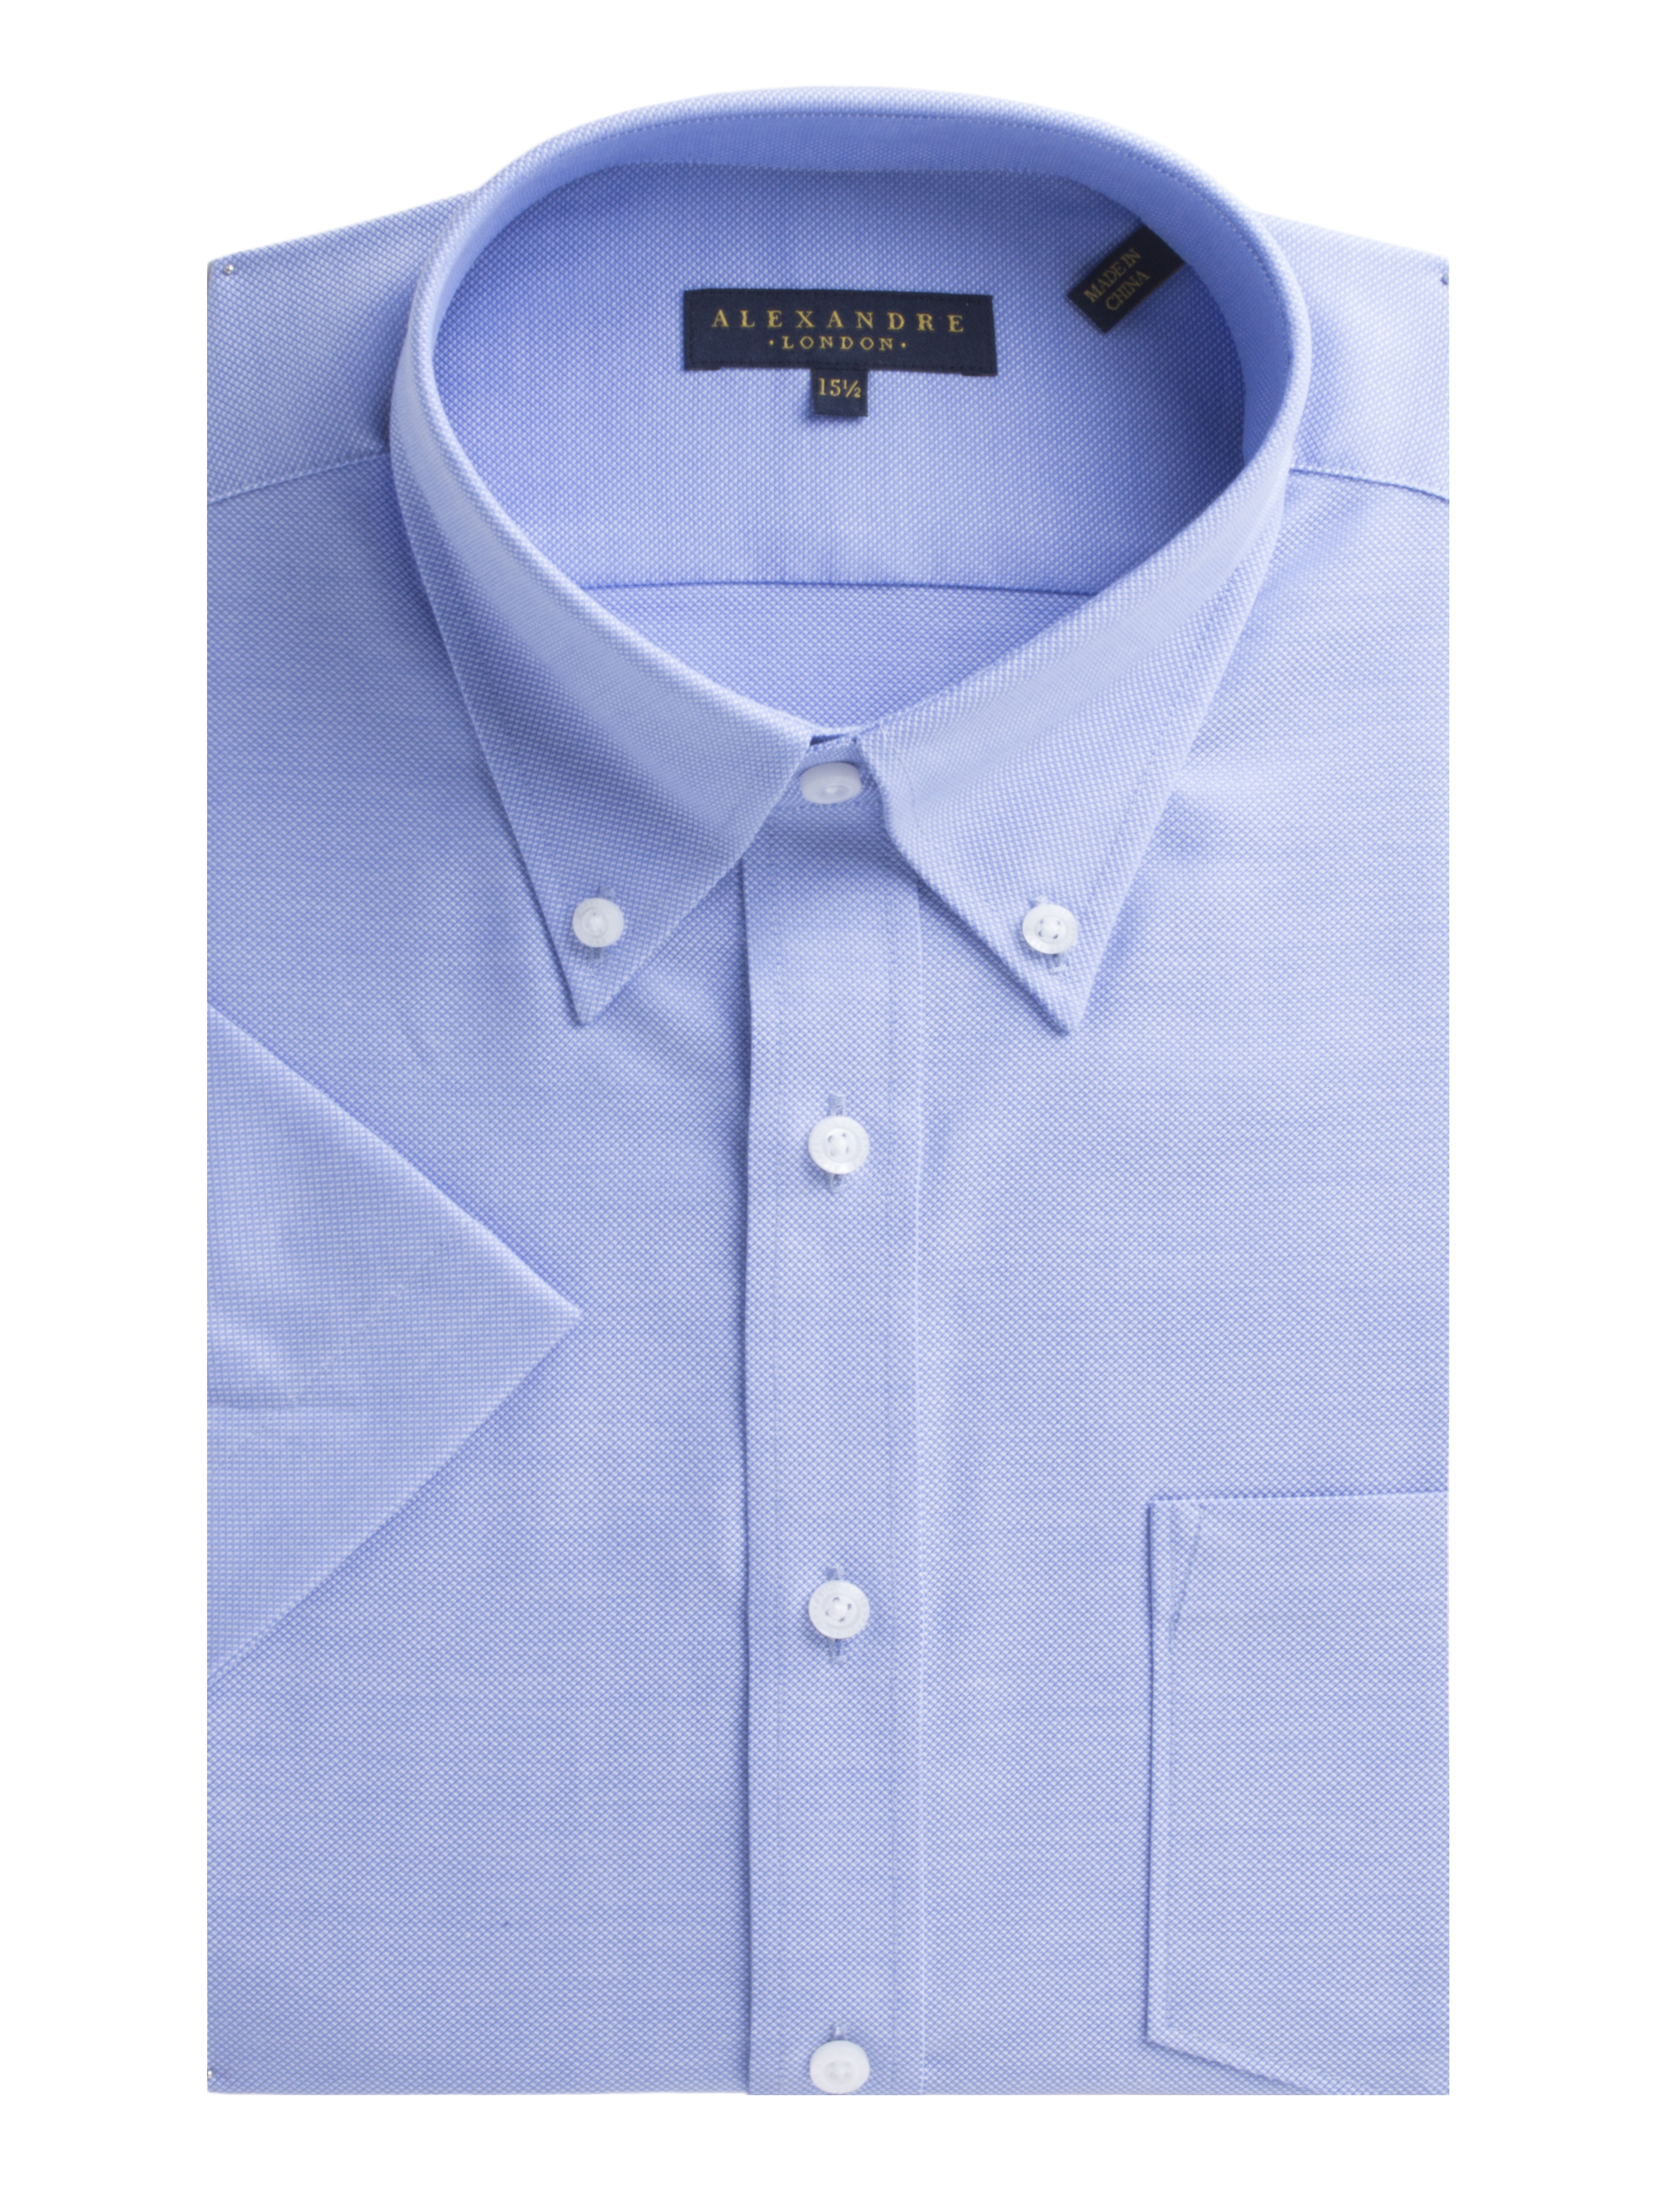 Light Blue Oxford Short Sleeve Shirt - Shirts - Alexandre London